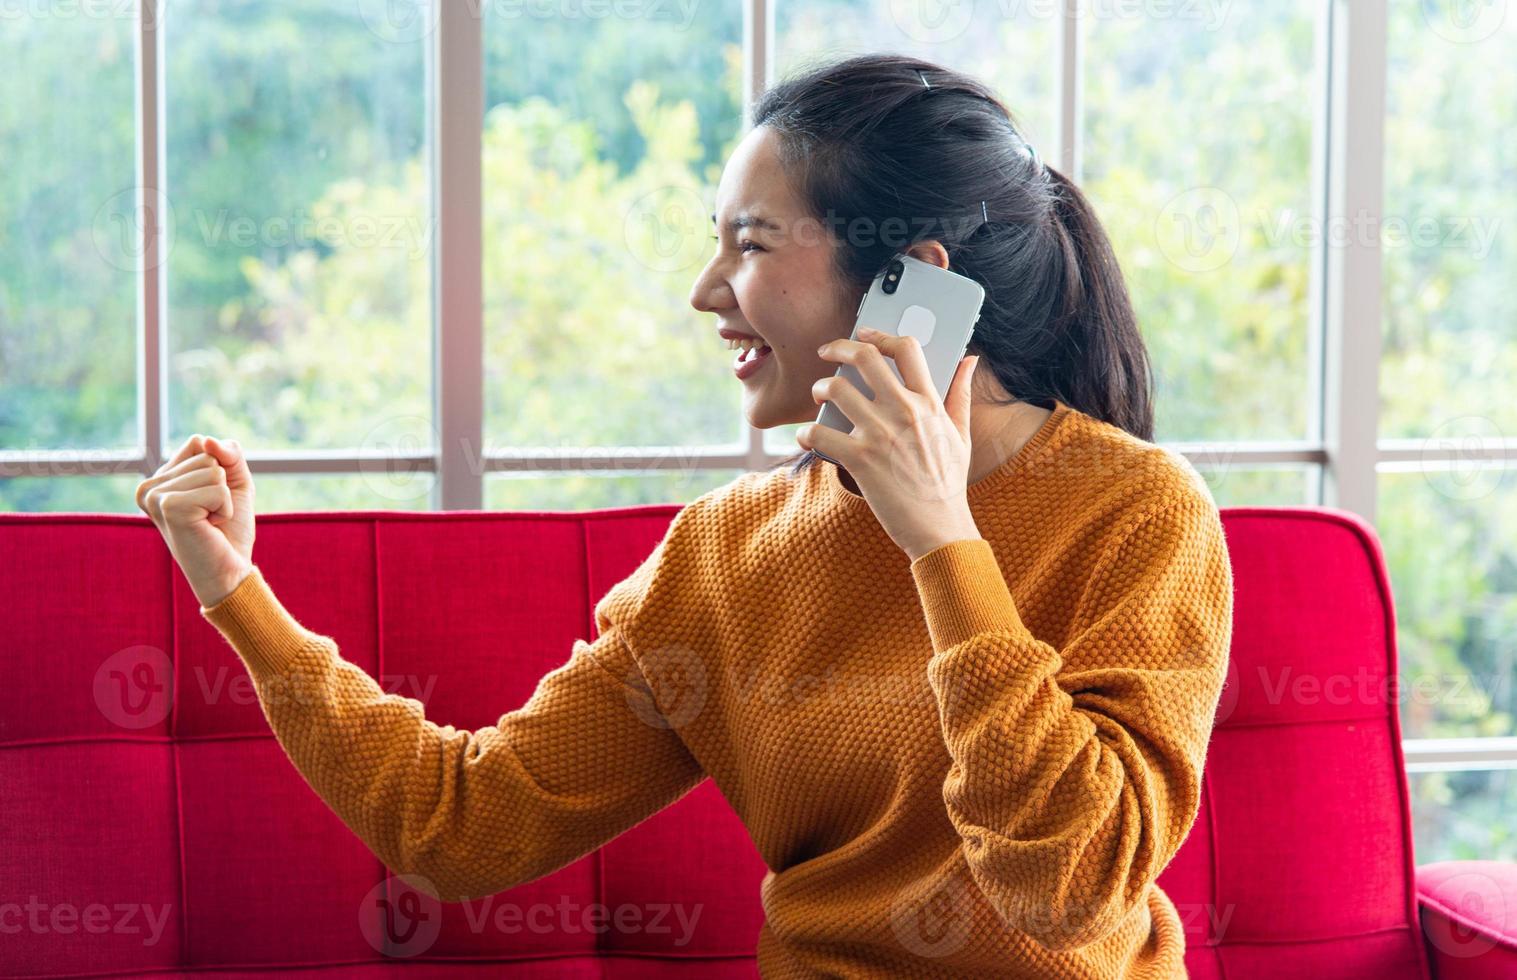 atractiva mujer hermosa con teléfono inteligente sentada en el interior de un sofá rojo, haciendo una llamada telefónica con una emoción emocionante foto